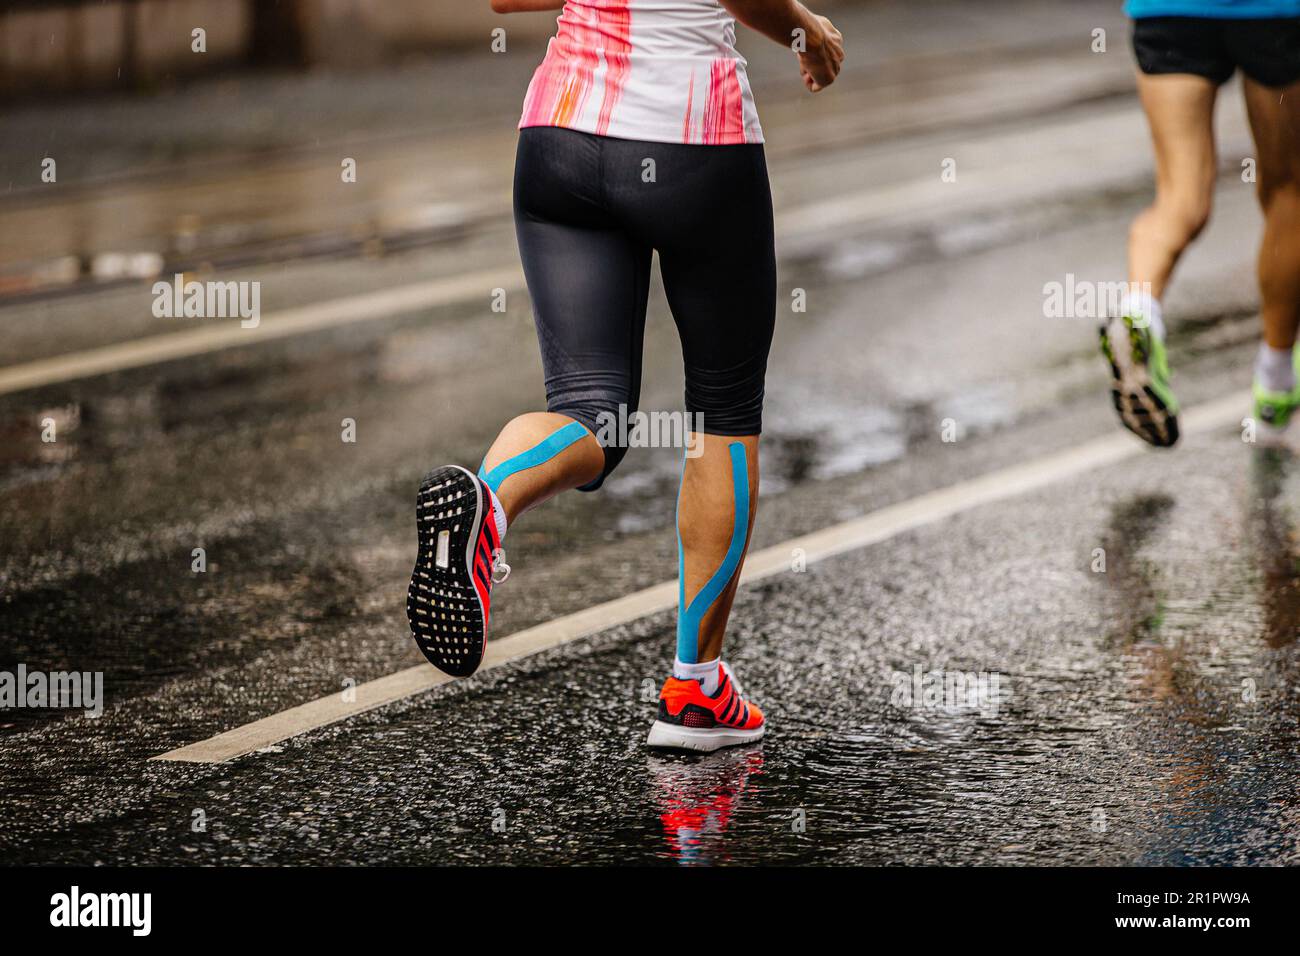 Beine Frauen Laufschuhe Adidas Laufmarathon Rennen auf nassen Straßen,  kinesio Klebeband auf Schienbeinen Stockfotografie - Alamy